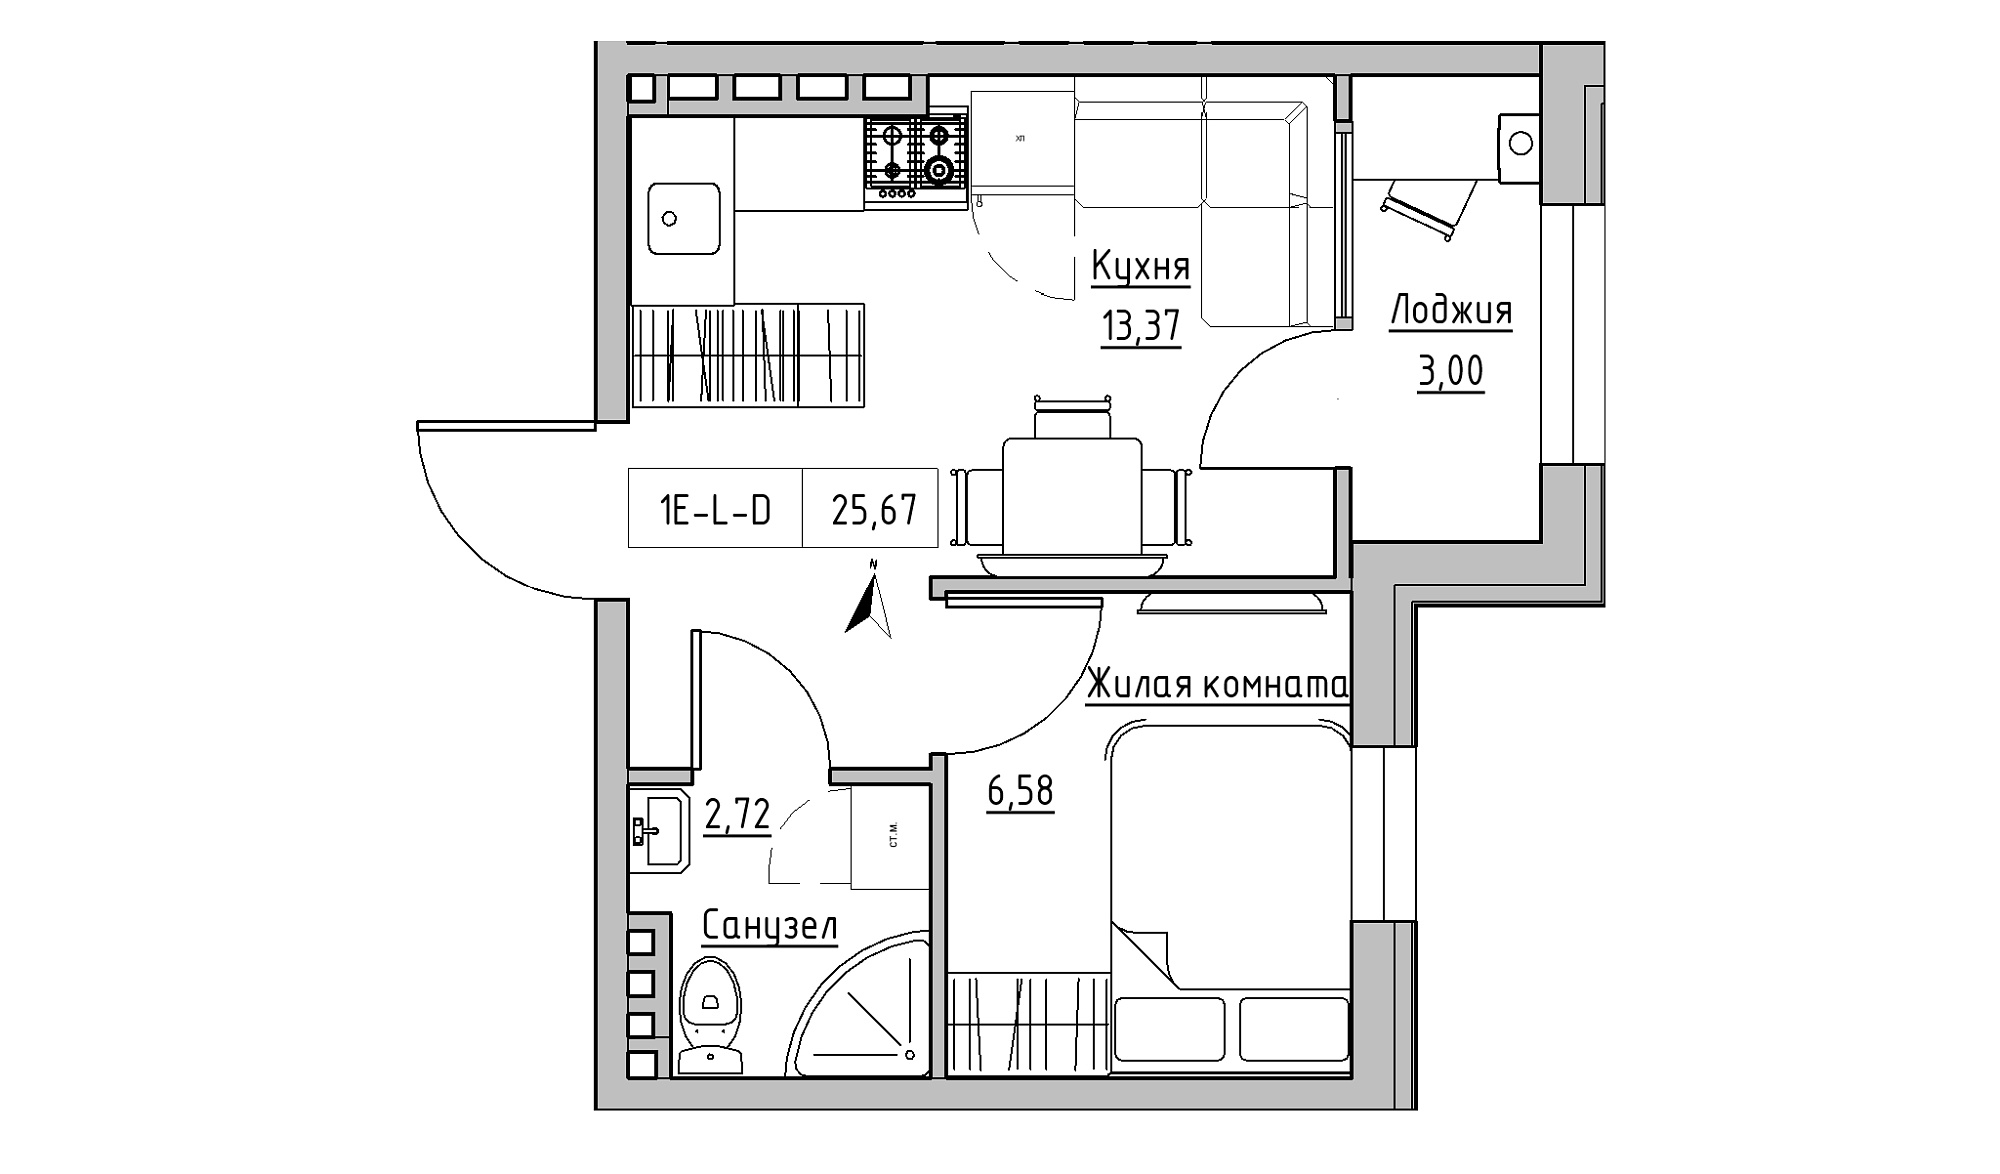 Планування 1-к квартира площею 25.67м2, KS-024-05/0018.